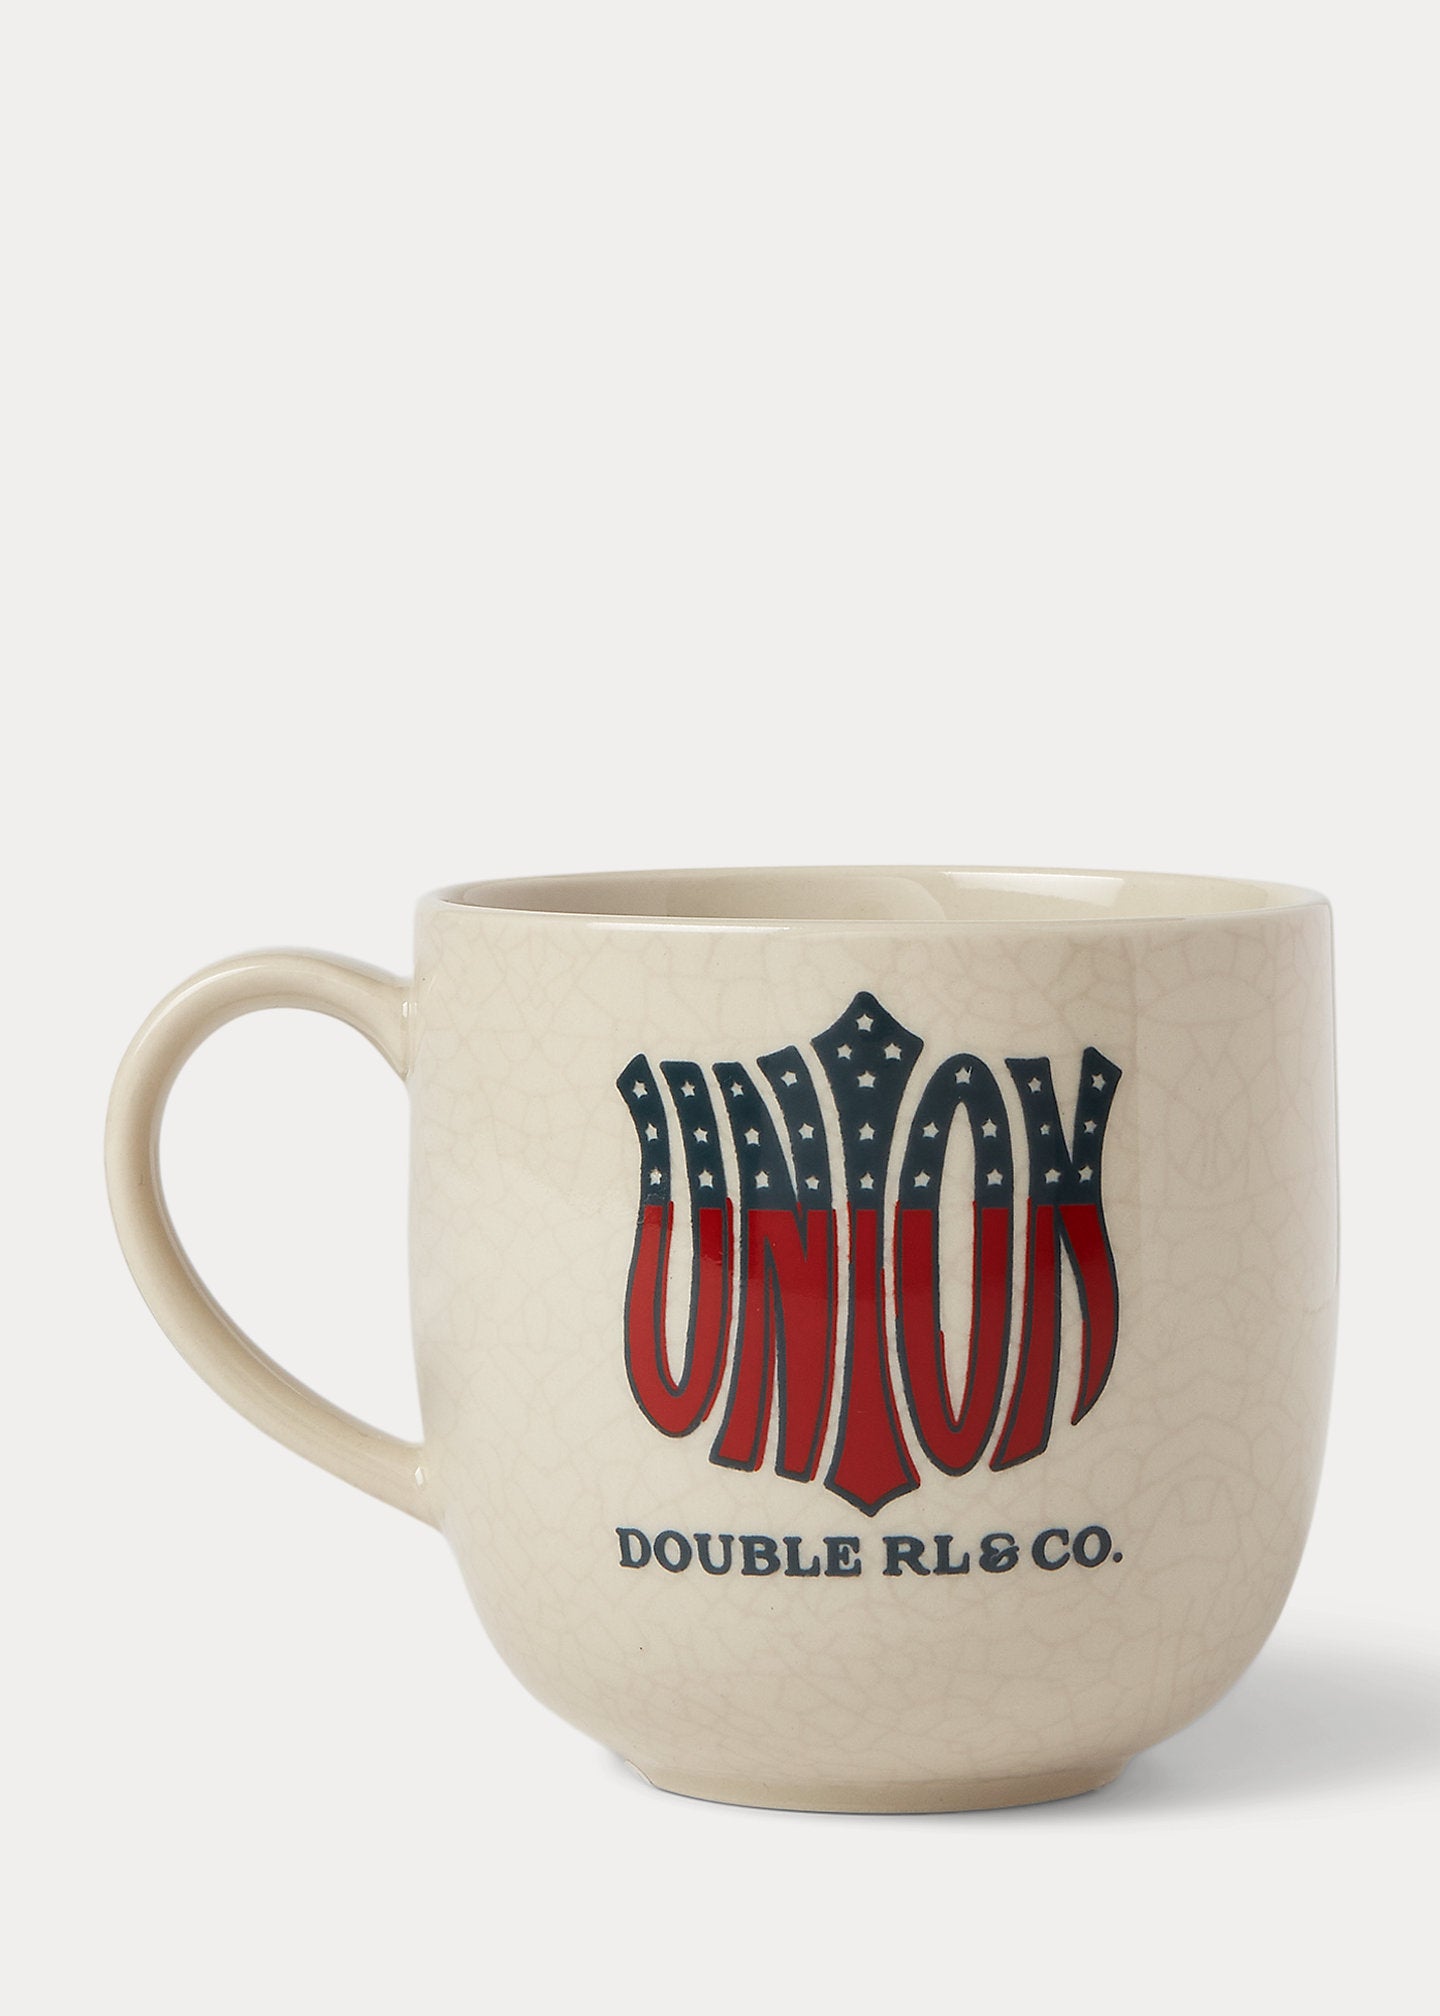 RRL "Union” Mug